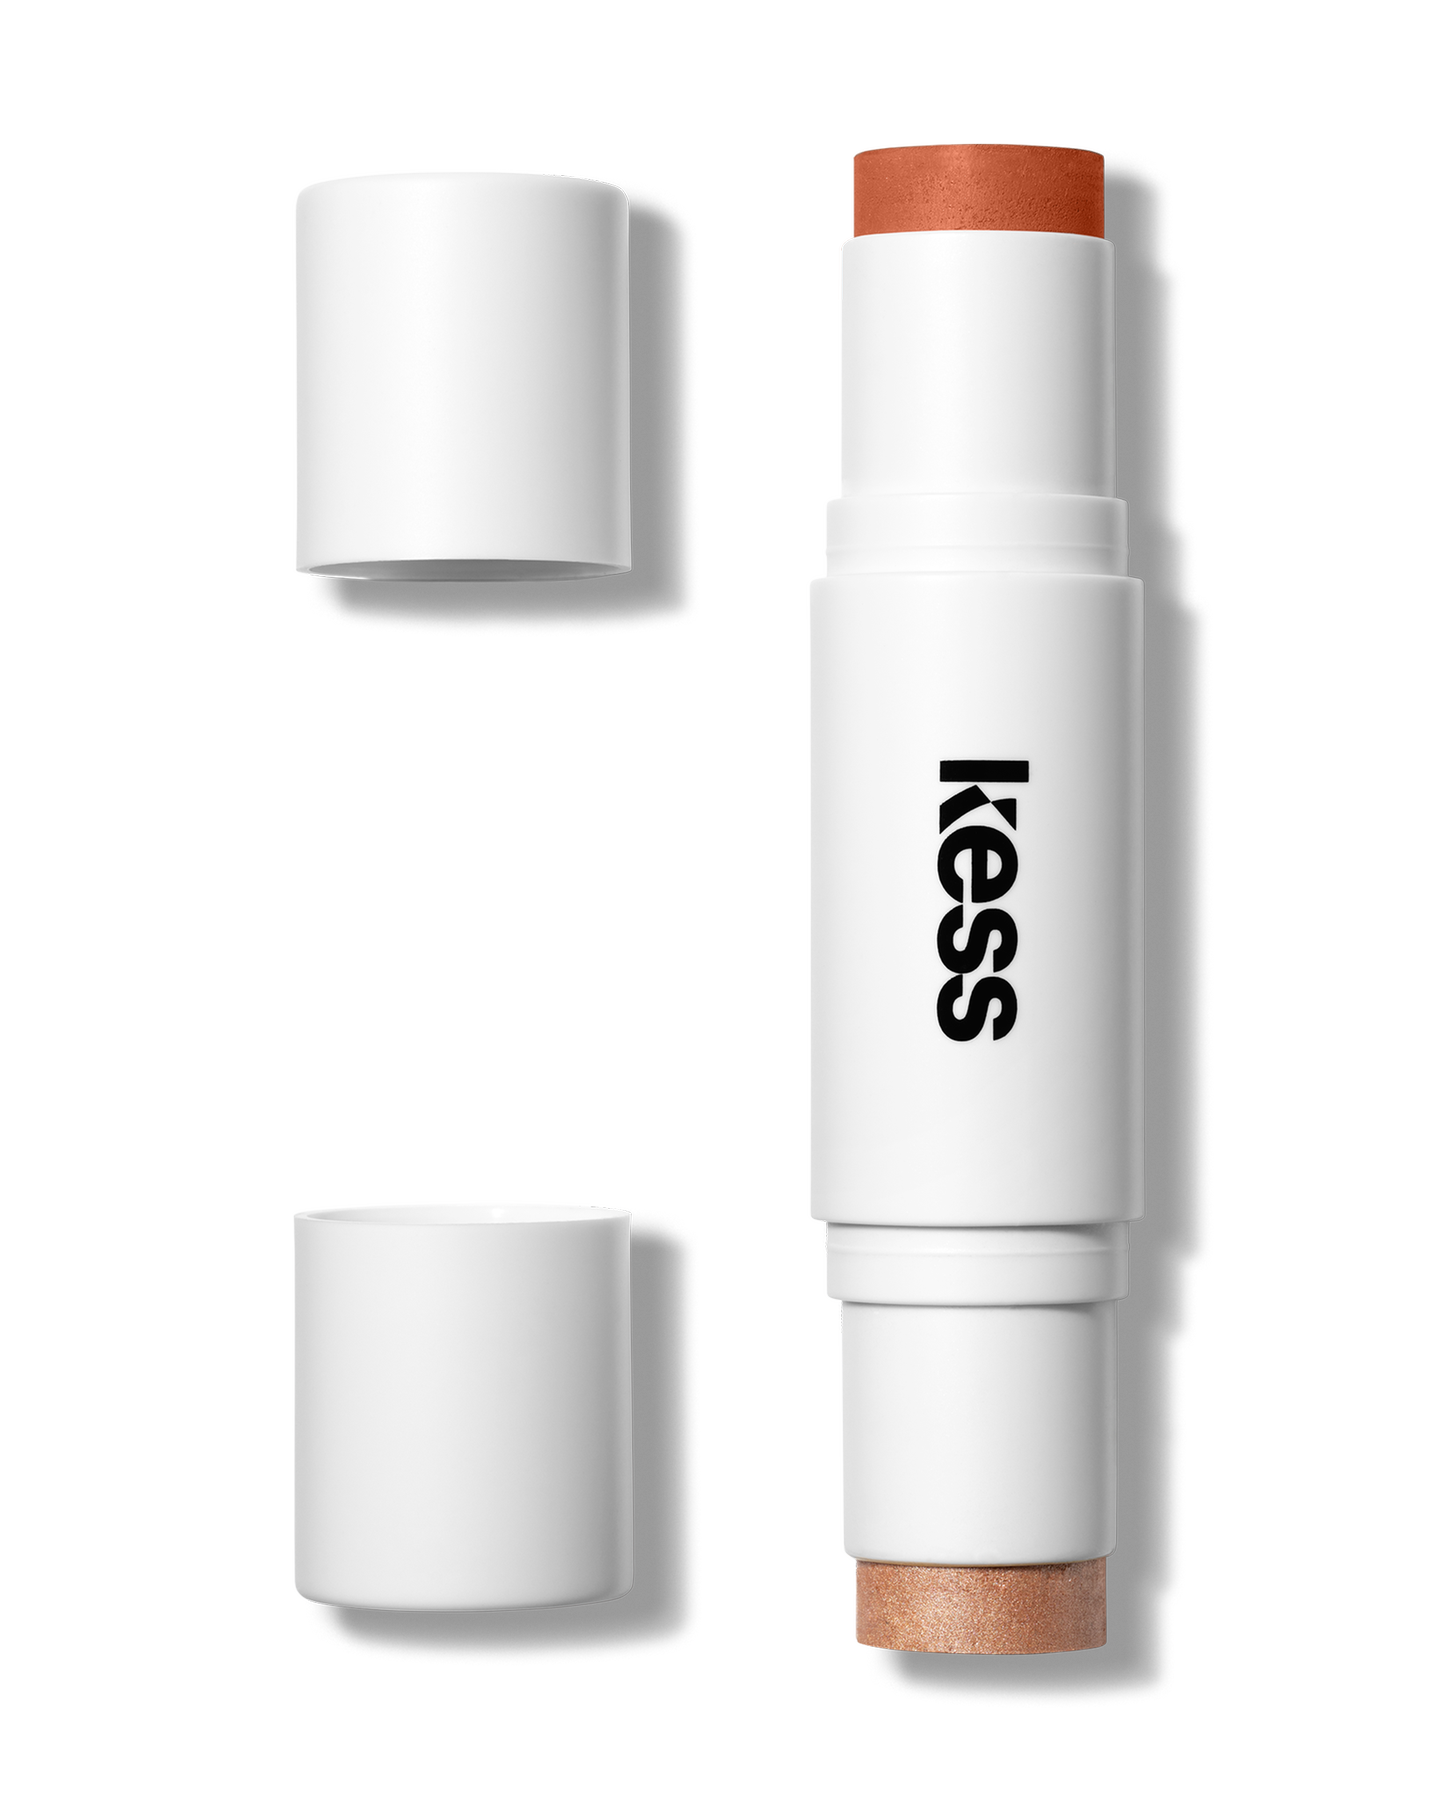 Der limitierte Terracotta Sun Glow Stick von KESS Berlin bringt unser Gesicht gleich doppelt zum Strahlen. Der vegane Blush & Highlighter Duo Stick lässt die Haut sonnengeküsst erscheinen – auch ohne Sonne. Für circa 32 Euro erhältlich.